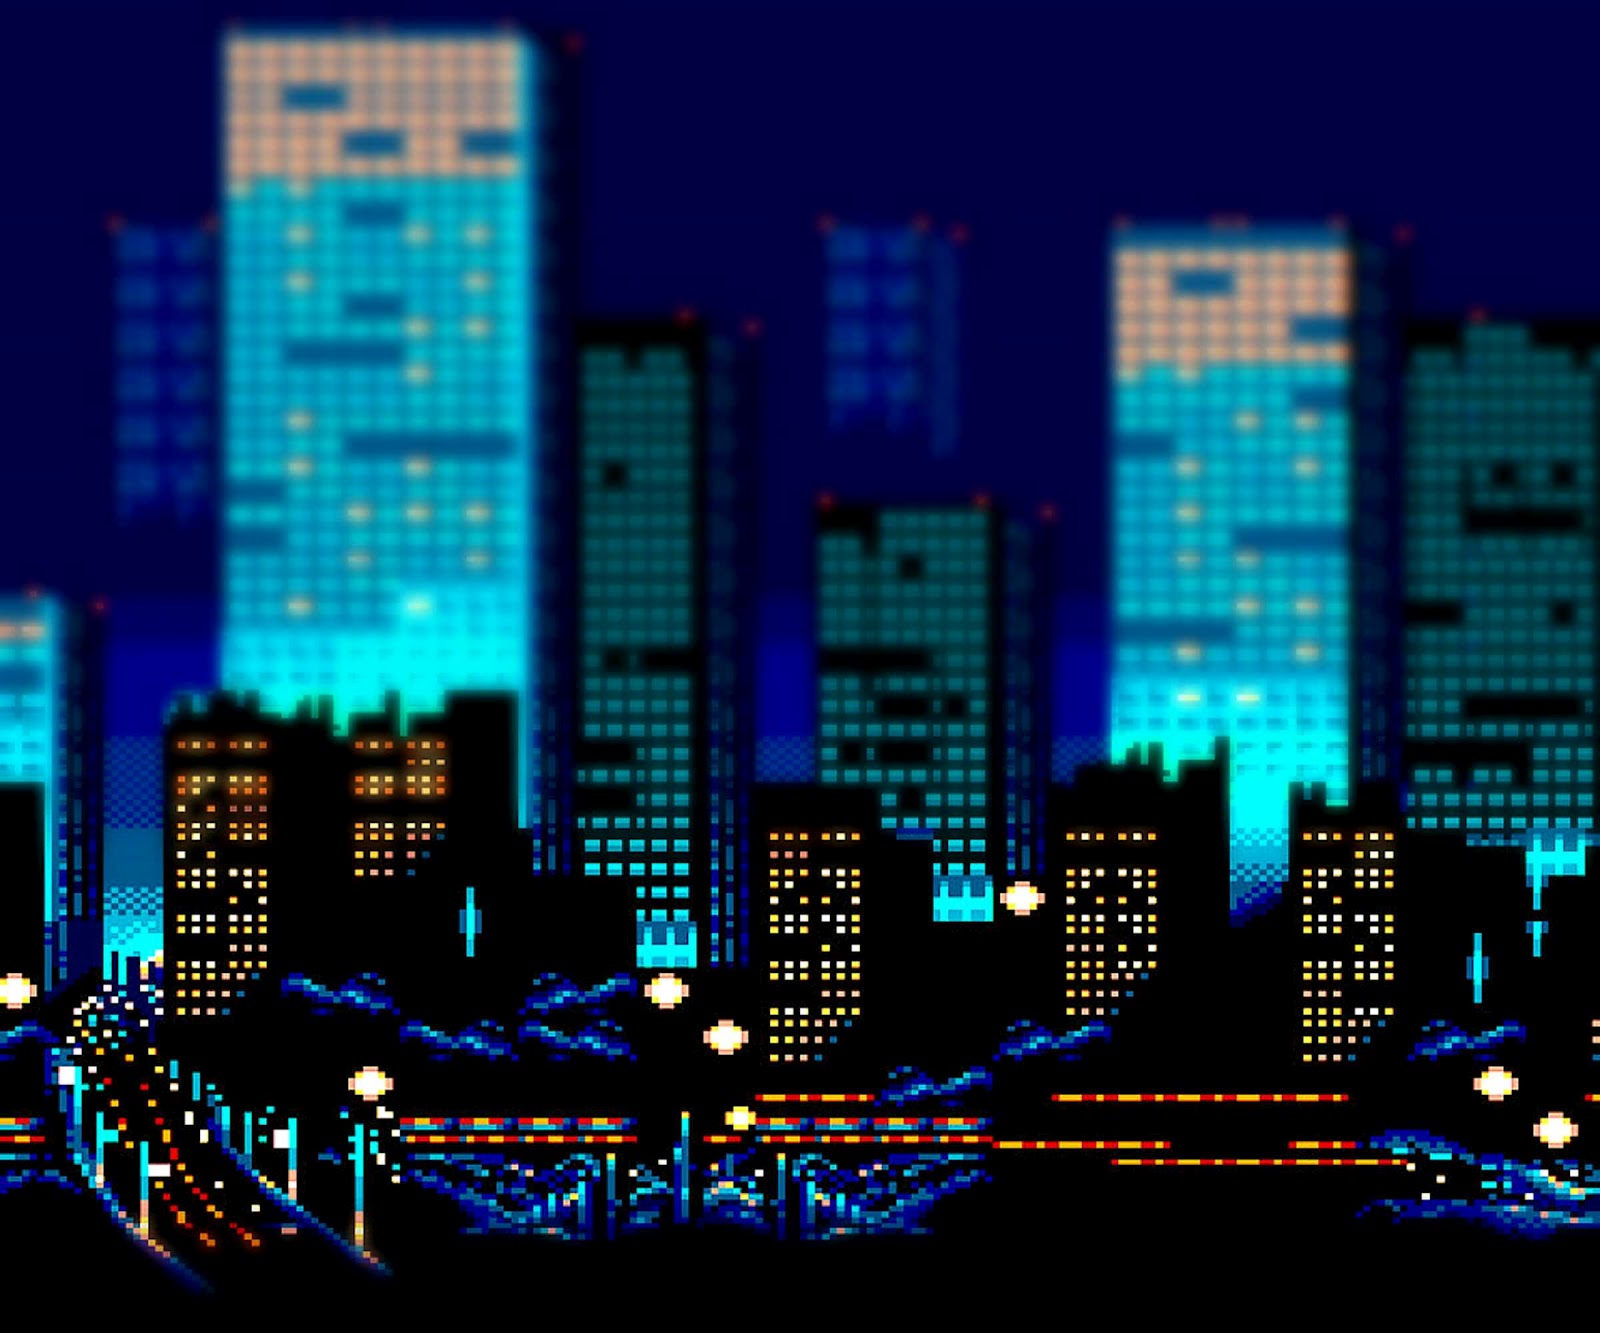 Bit City Background 8 bit city background